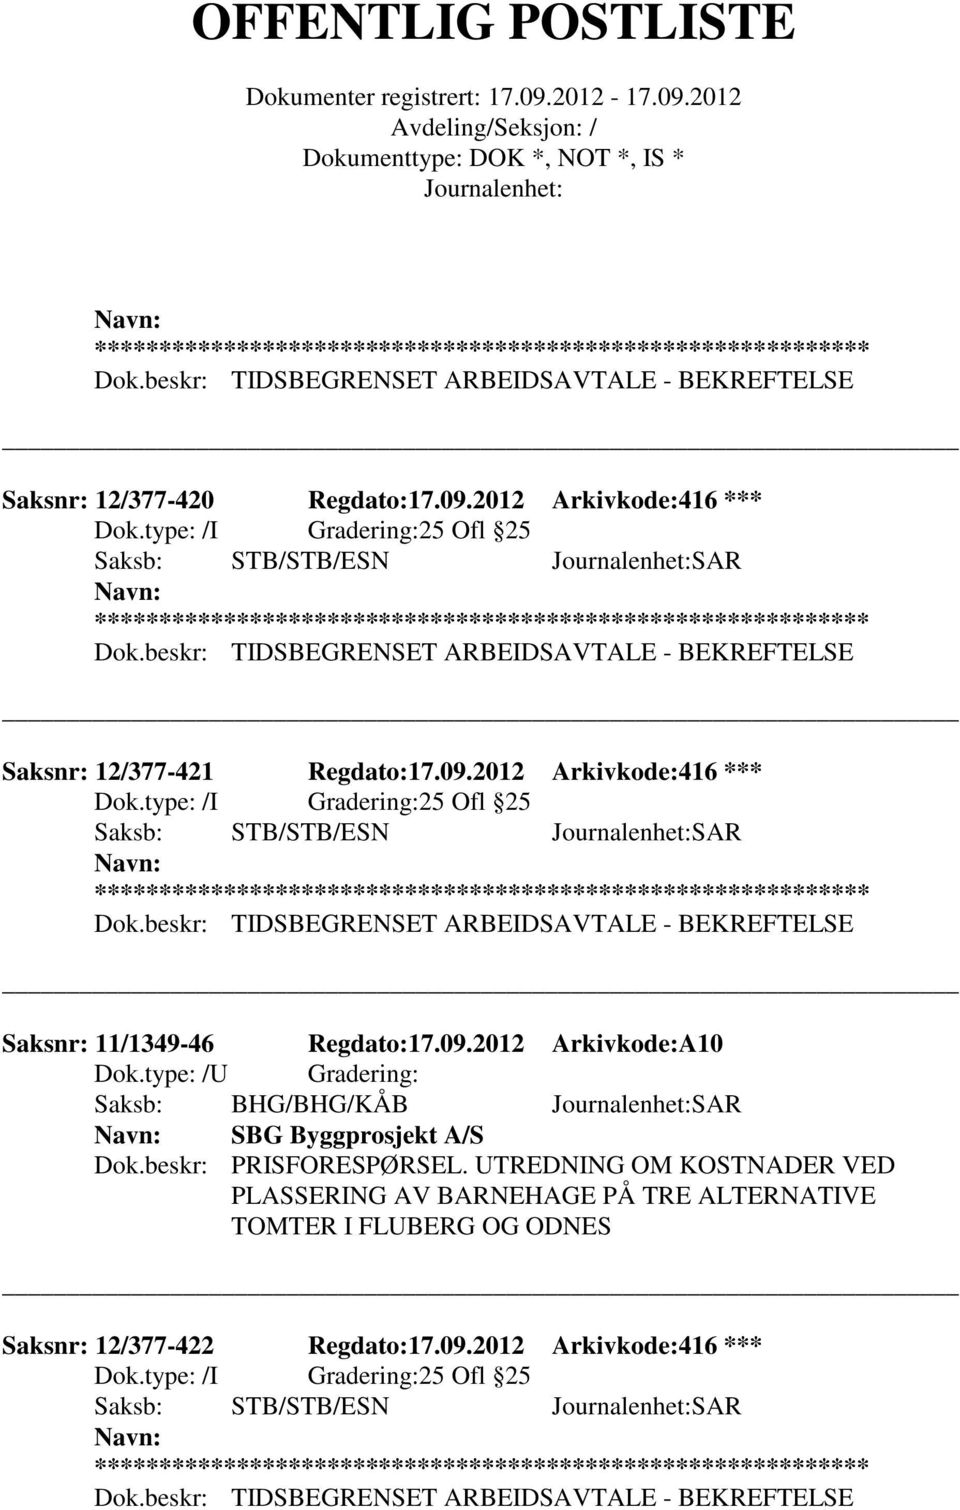 UTREDNING OM KOSTNADER VED PLASSERING AV BARNEHAGE PÅ TRE ALTERNATIVE TOMTER I FLUBERG OG ODNES Saksnr: 12/377-422